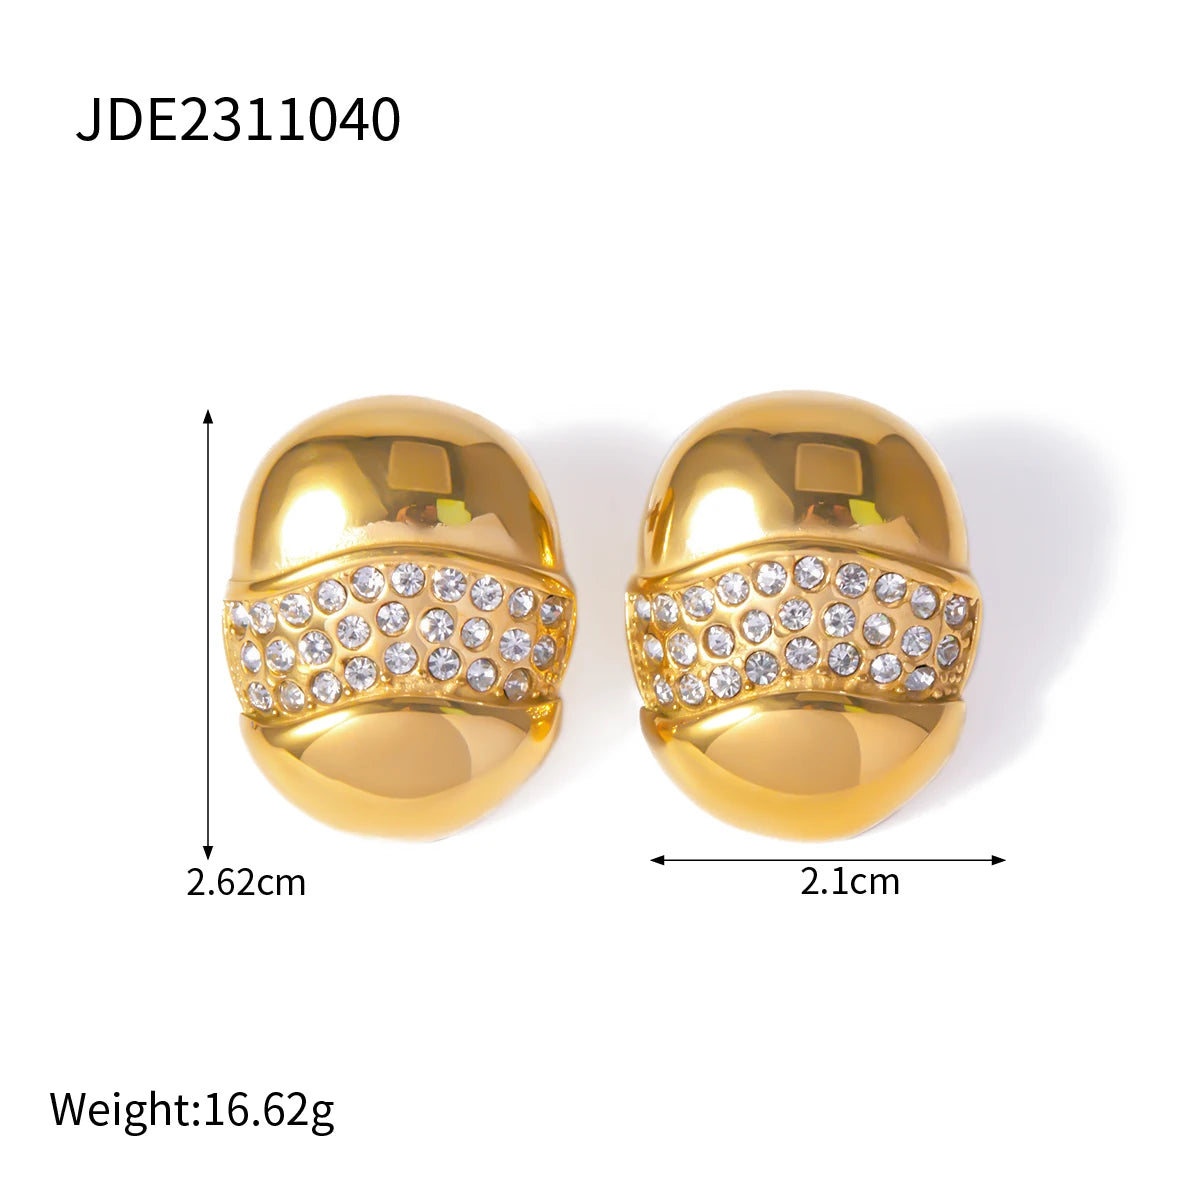 Boucles d'oreilles ovales dorées avec pierres-EA375